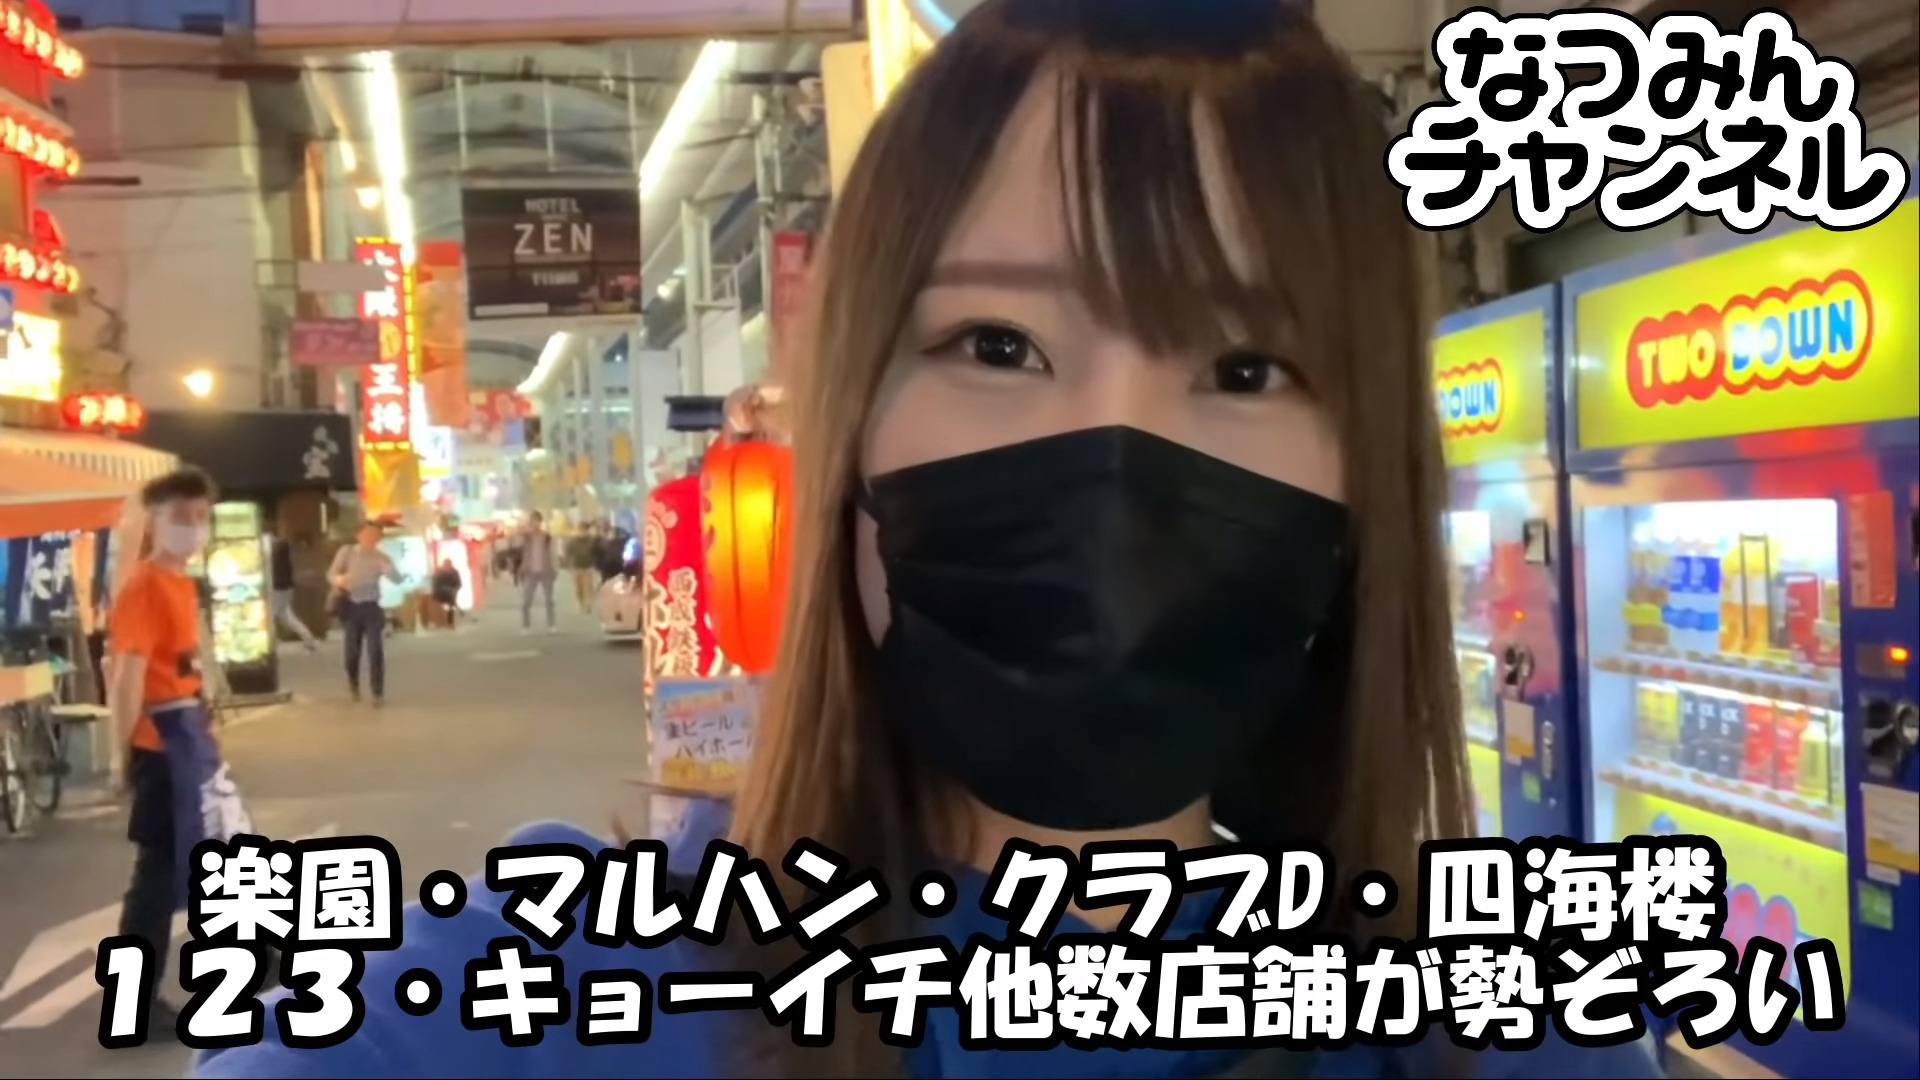 【悲報】大阪で飲み屋動画を公開した夏海さん、スクーブTV時代の発言から盛大なブーメランが頭上にぶっ刺さる